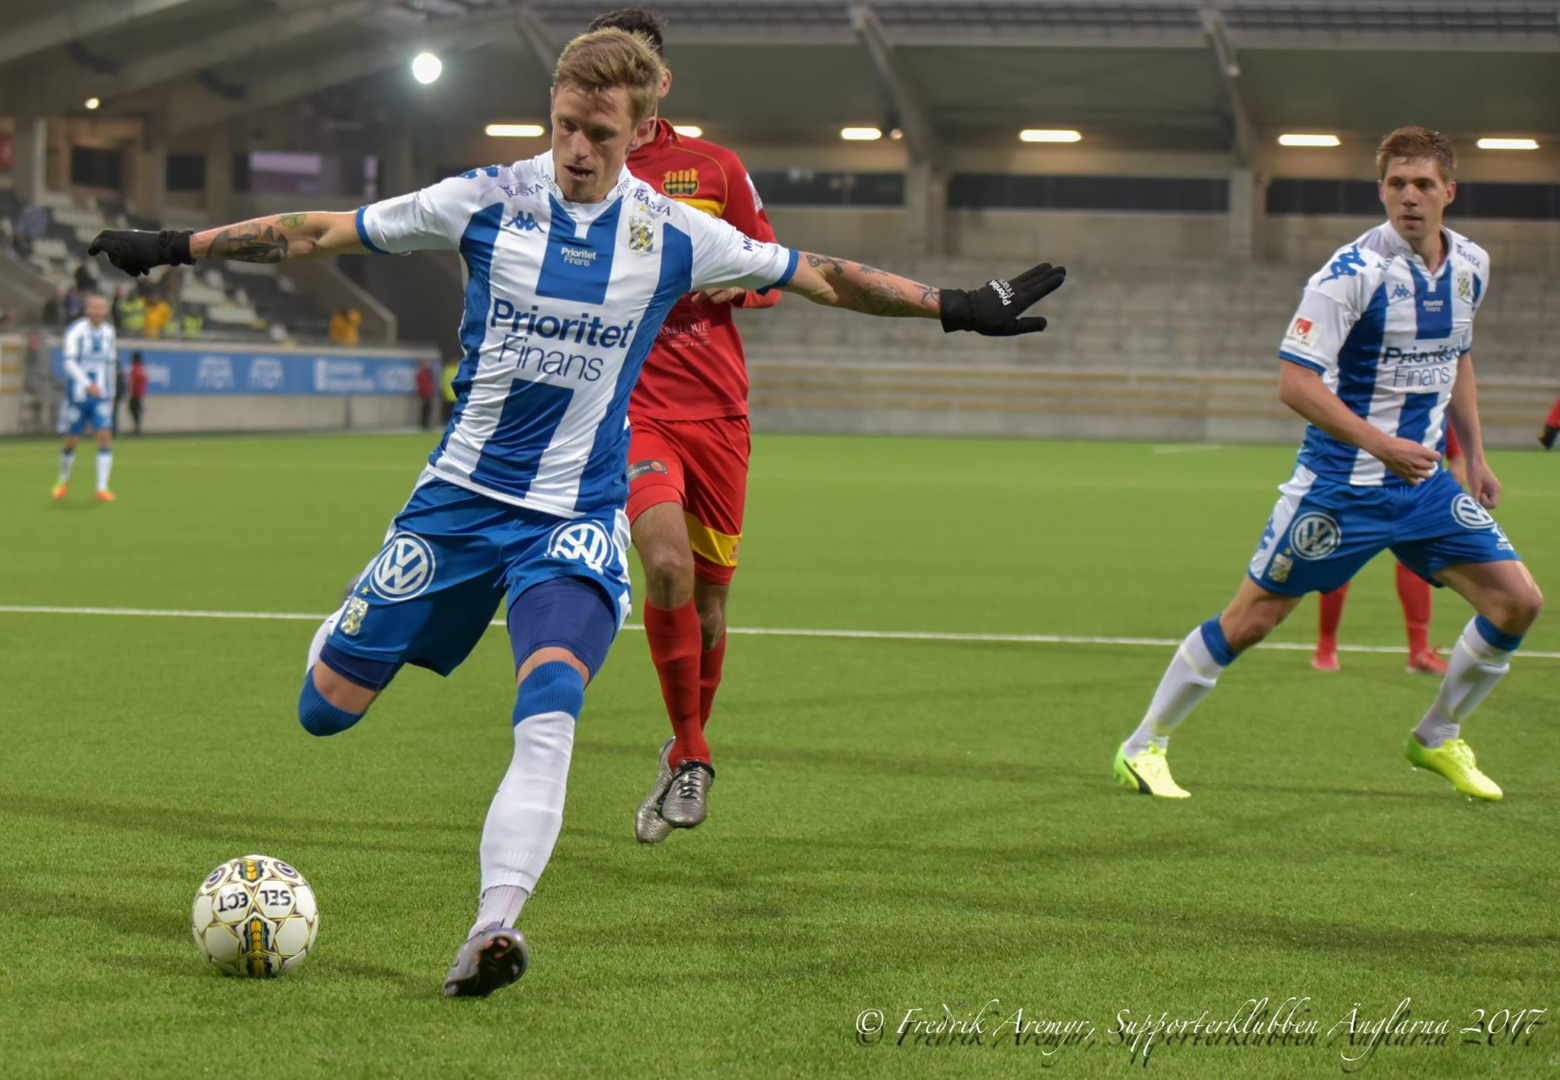 Søren Rieks med bollen. Till höger ses Mikael Boman.